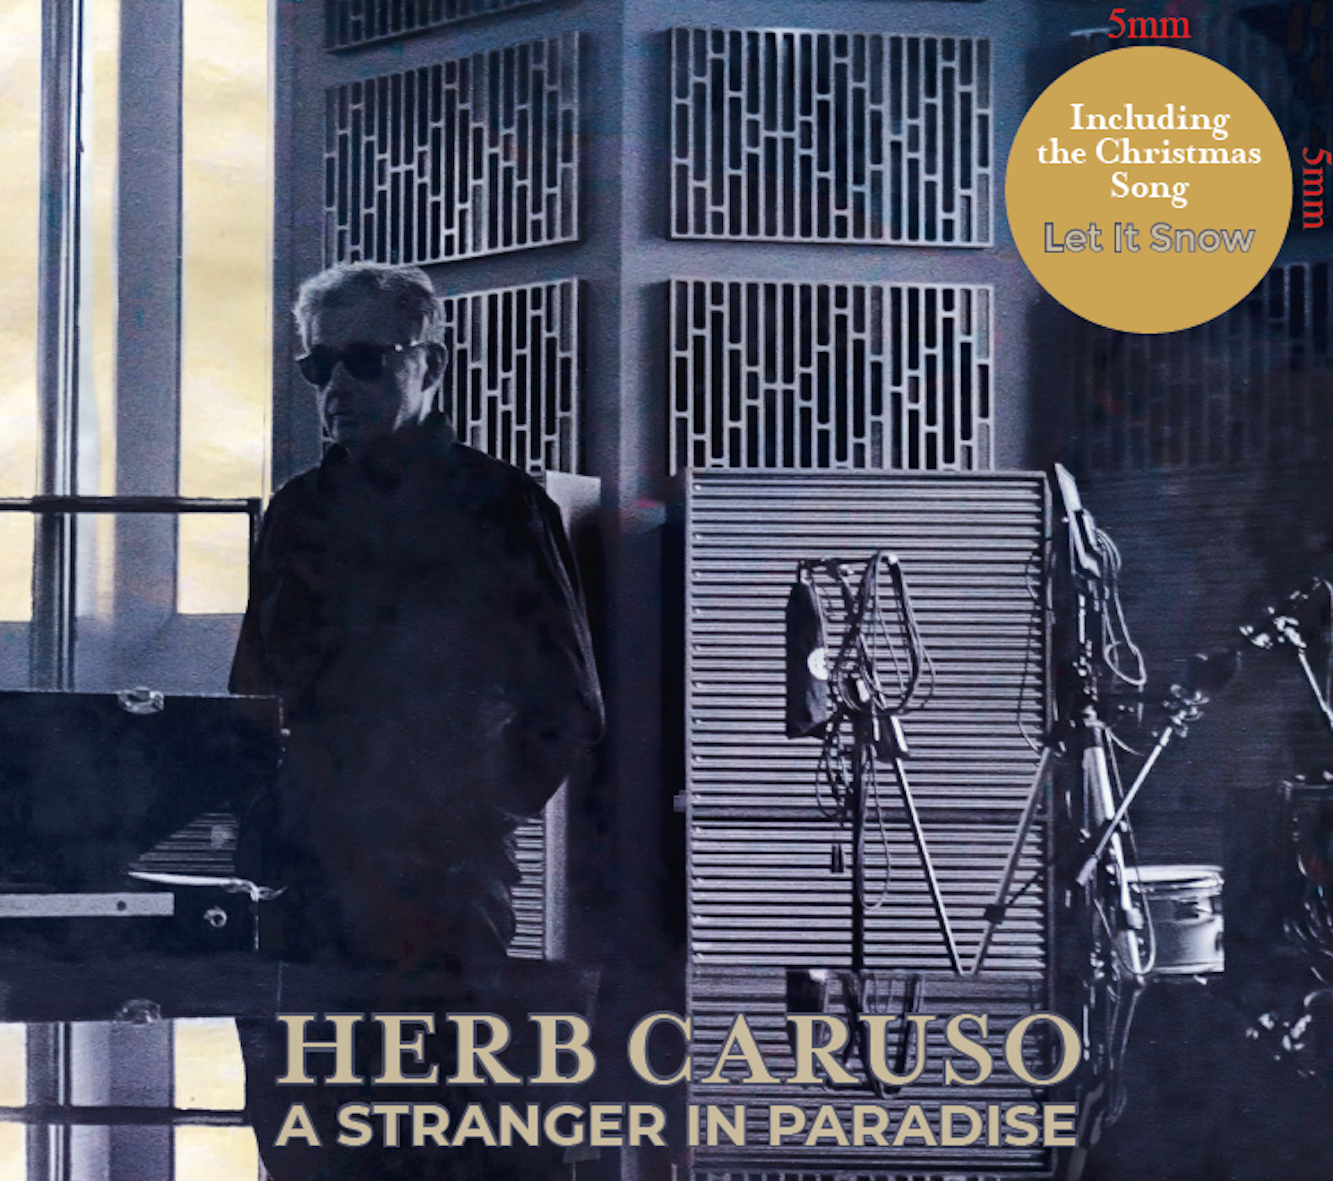 Herb Caruso